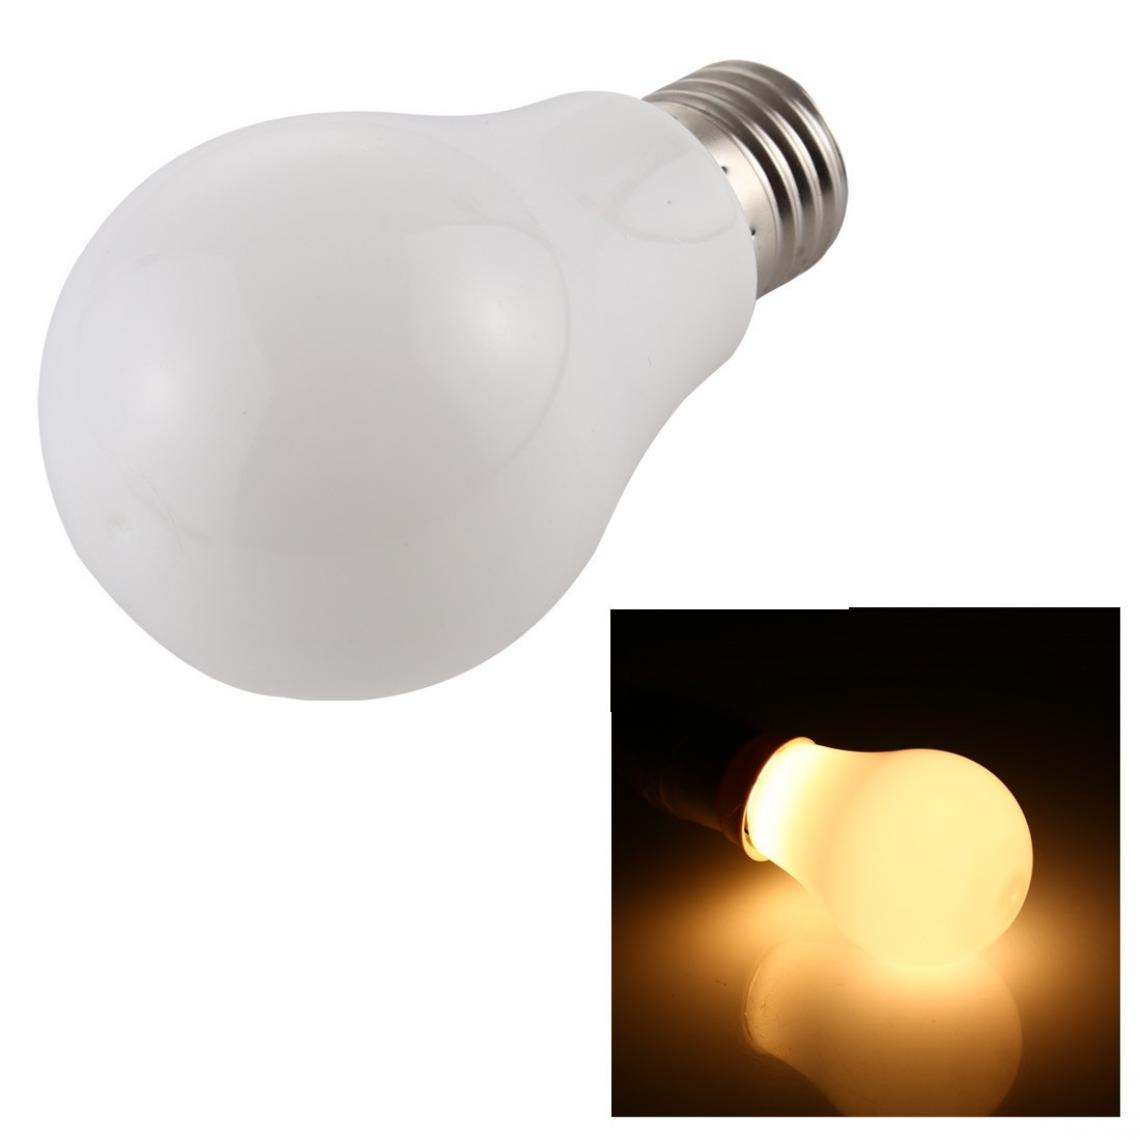 Wewoo - 7W 500LM E27 2835 28LEDs Ampoule à économie d'énergie LED sans scintillementcouleur de la lumière blanc chaudAC 85-265V - Ampoules LED